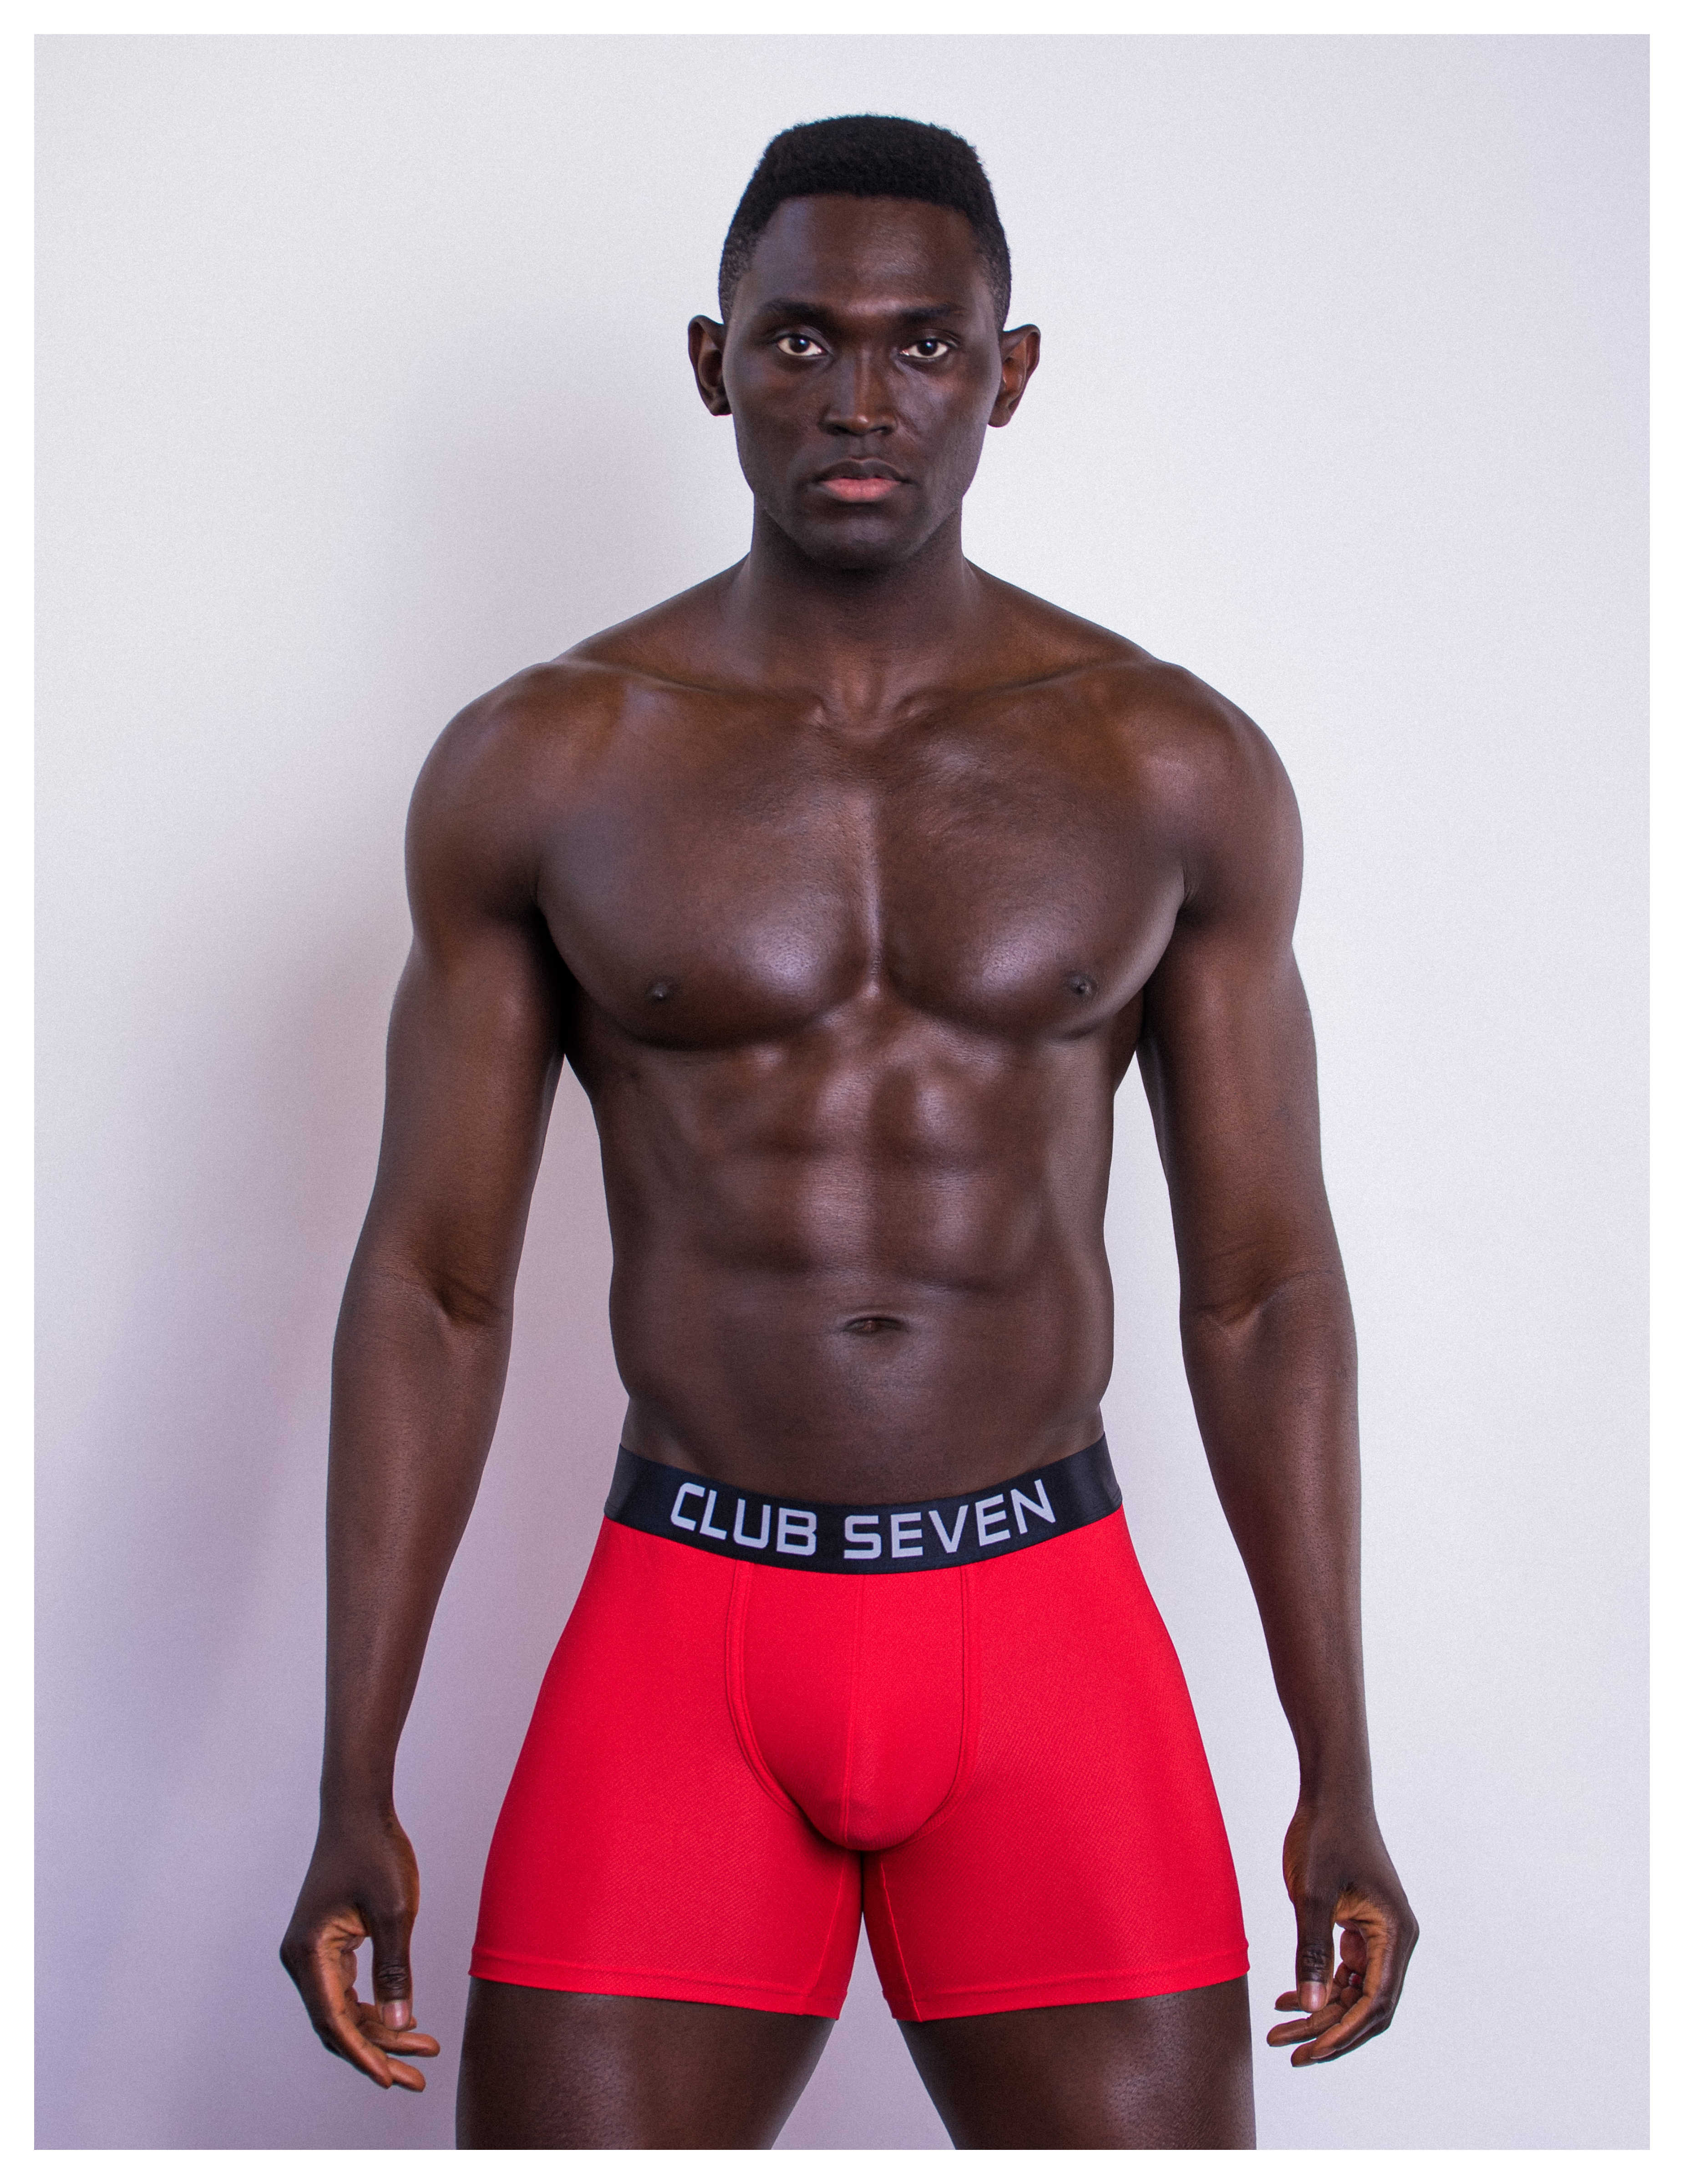 Club Seven Menswear - Luxury Man's Underwear & Menswear